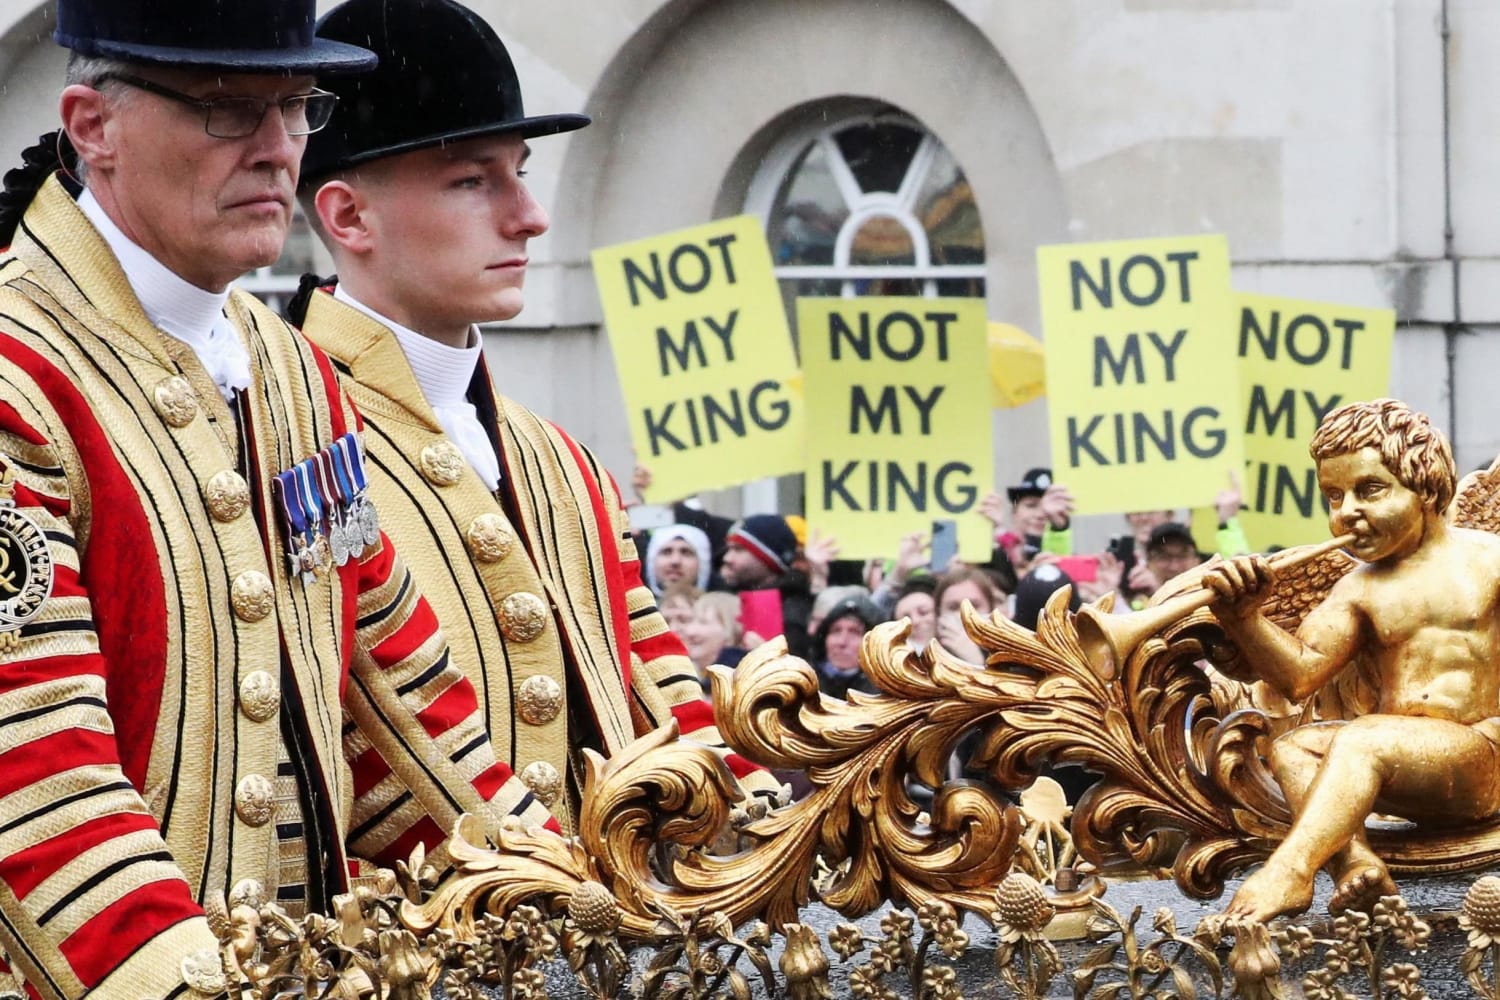 Manifestantes presos durante a assinatura da coroação do rei Charles Nem todo mundo está bravo com a realeza